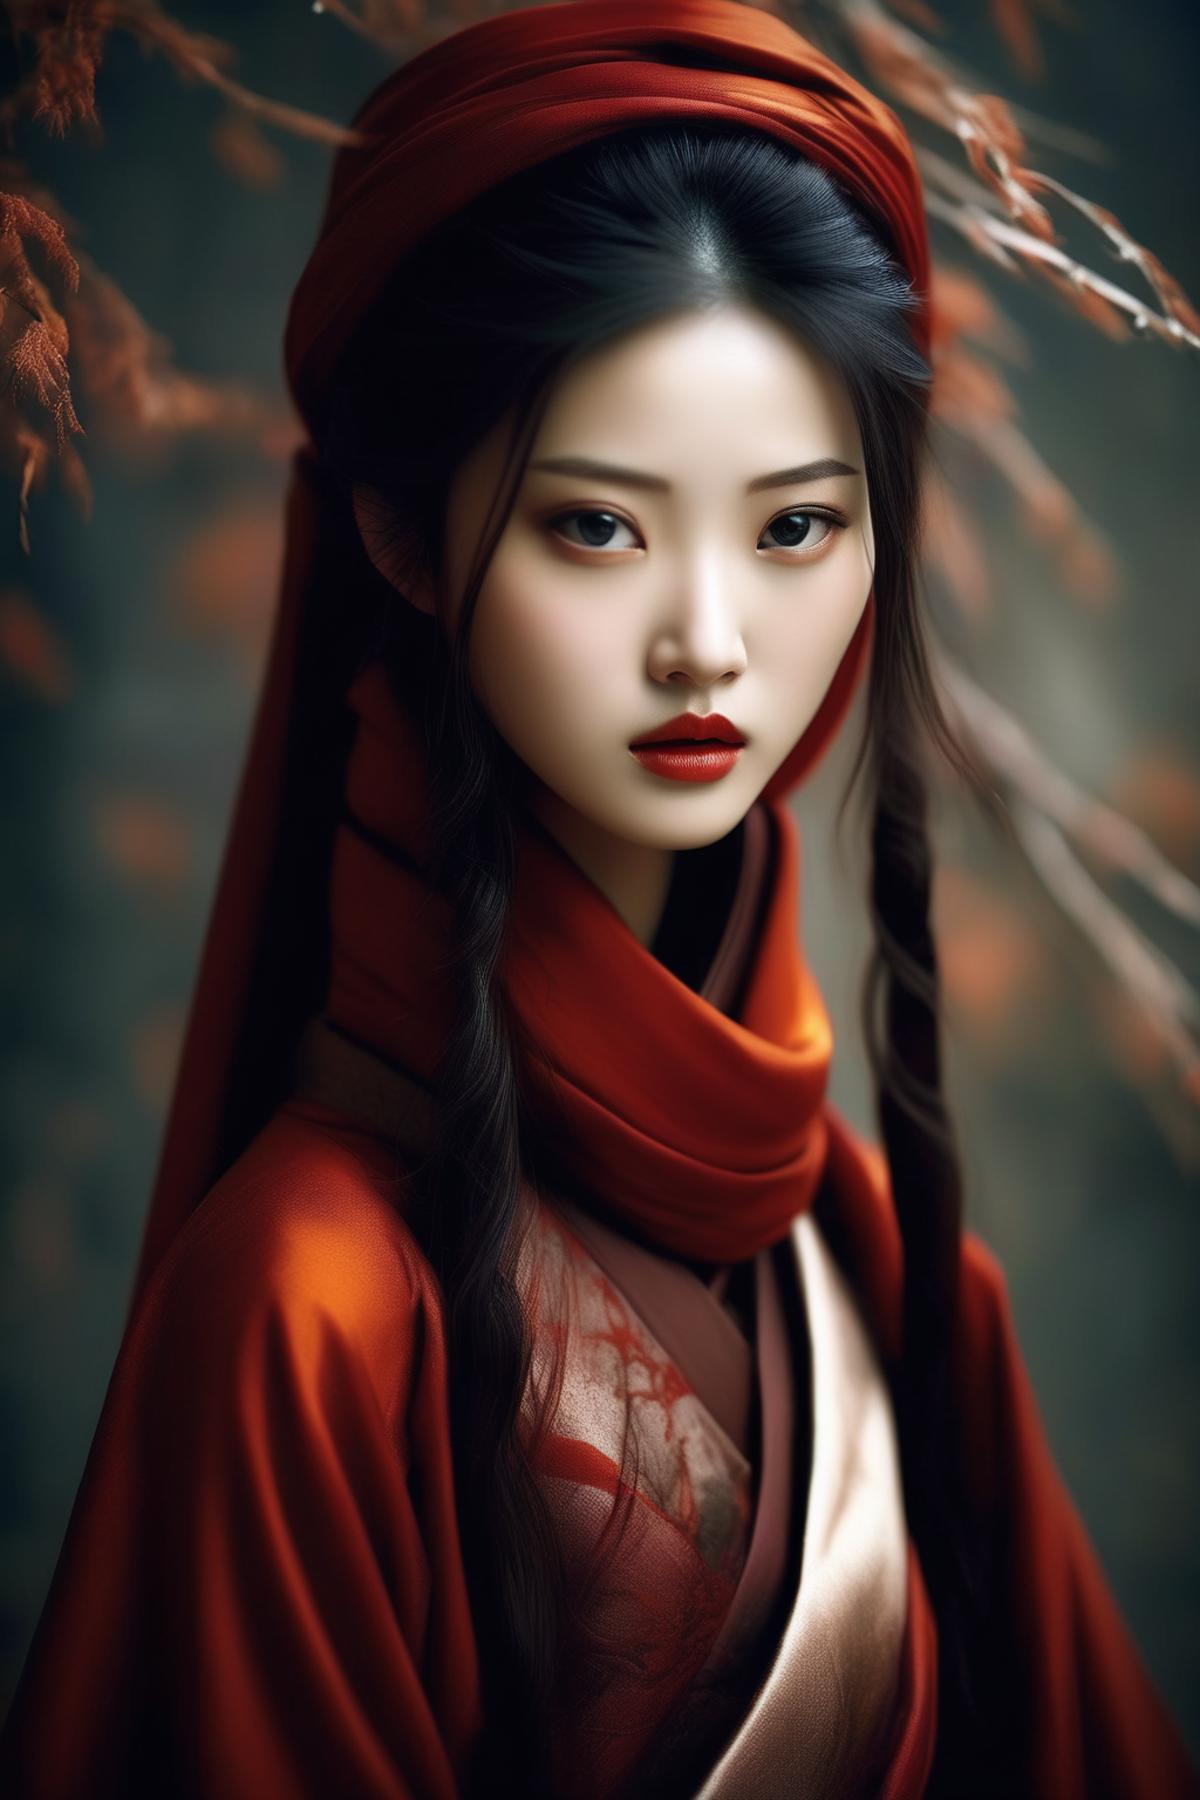 Zhang Jingna Style image by Kappa_Neuro